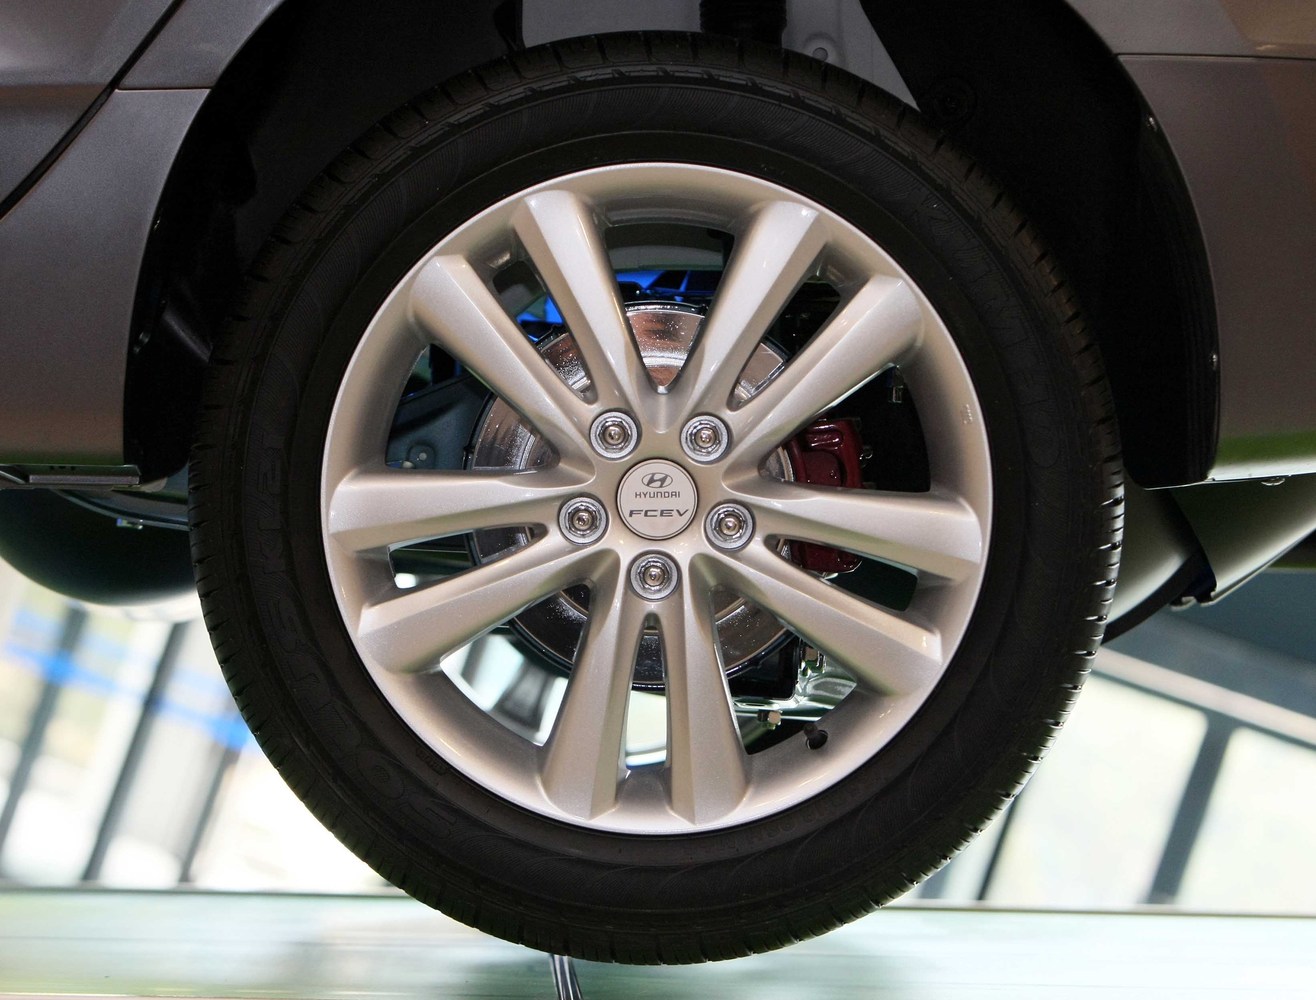 кроссовер Hyundai ix35 2010 - 2013г выпуска модификация 2.0 AT (136 л.с.) 4×4